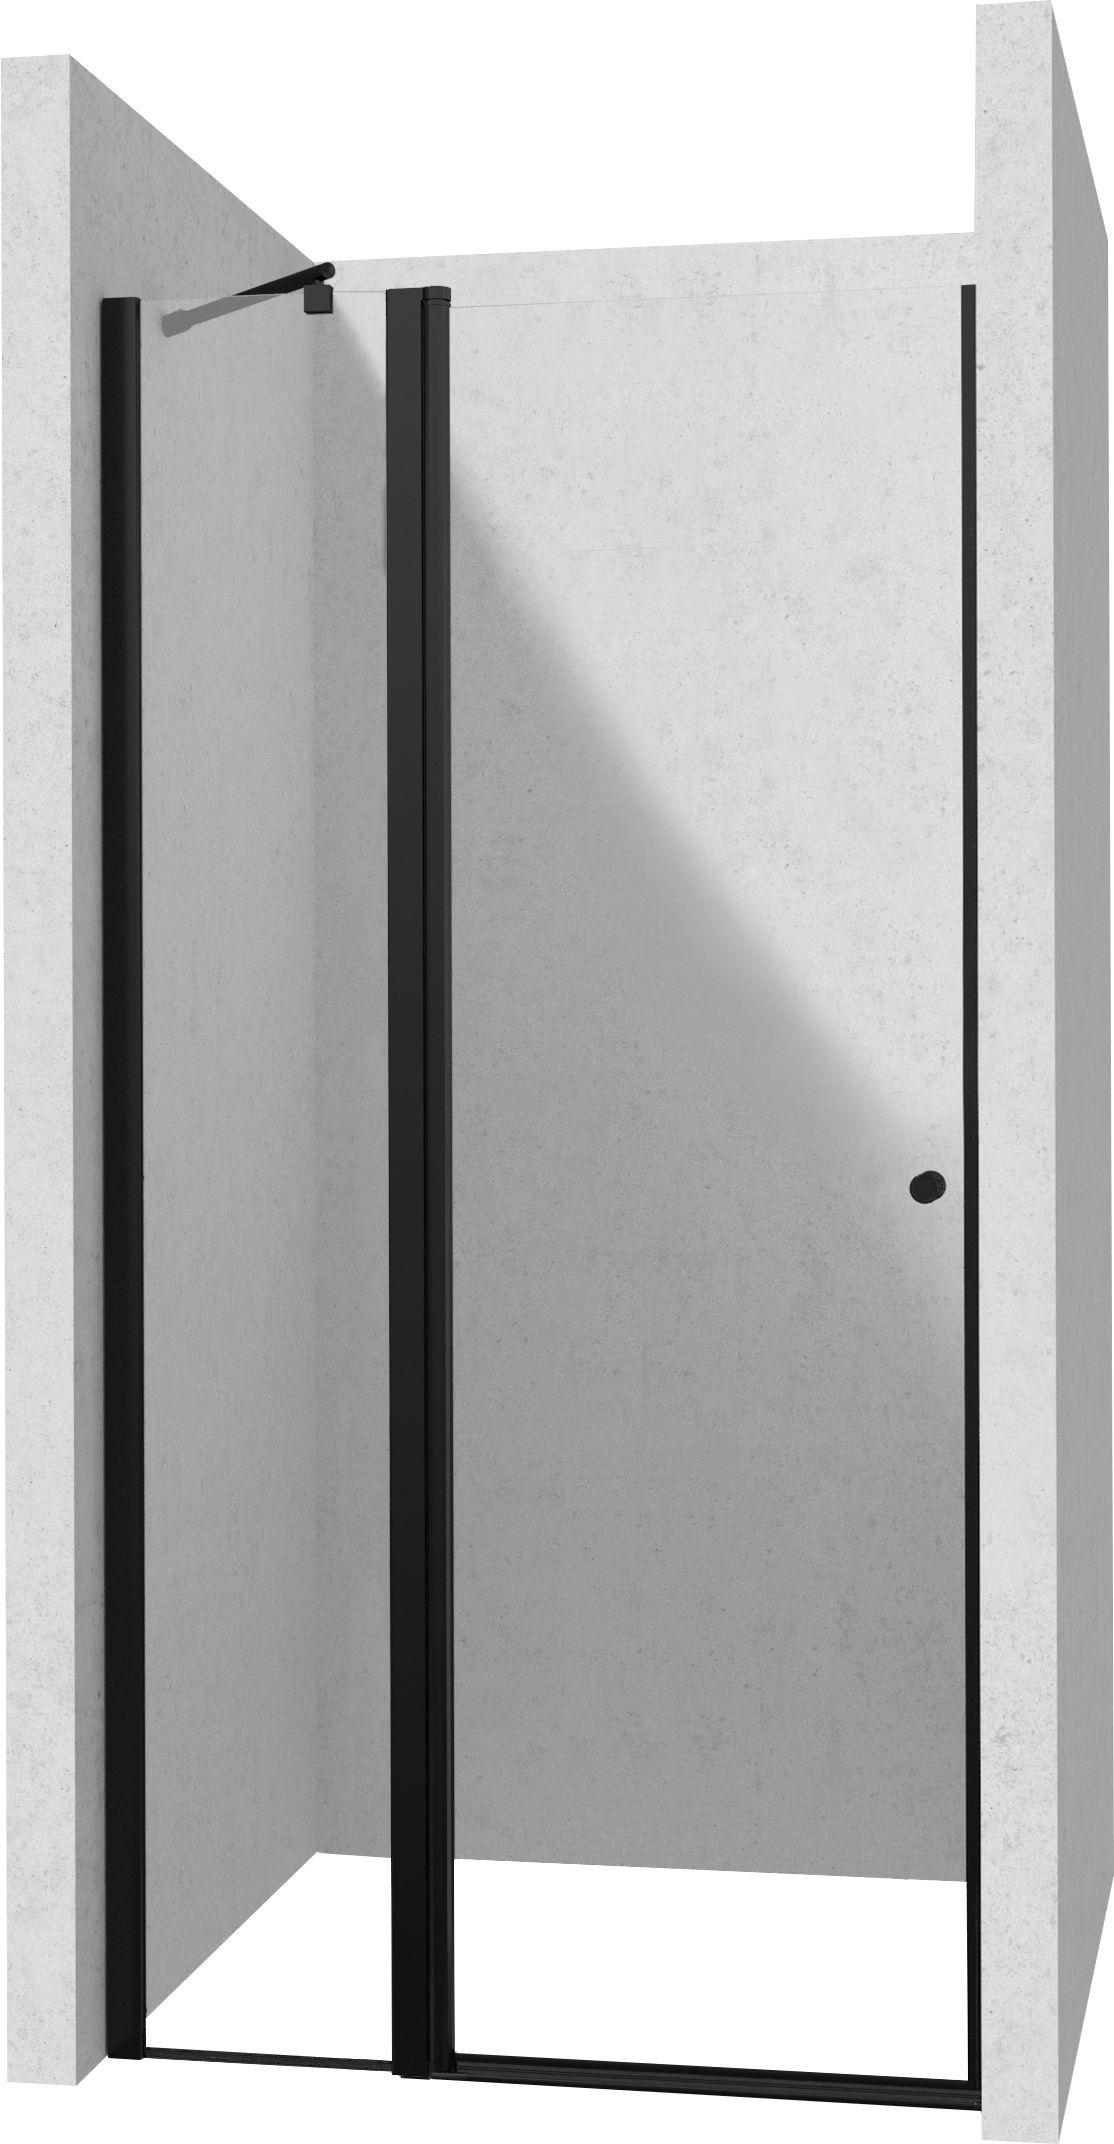 Drzwi prysznicowe 120 cm - uchylne - KTSUN45P - Główne zdjęcie produktowe